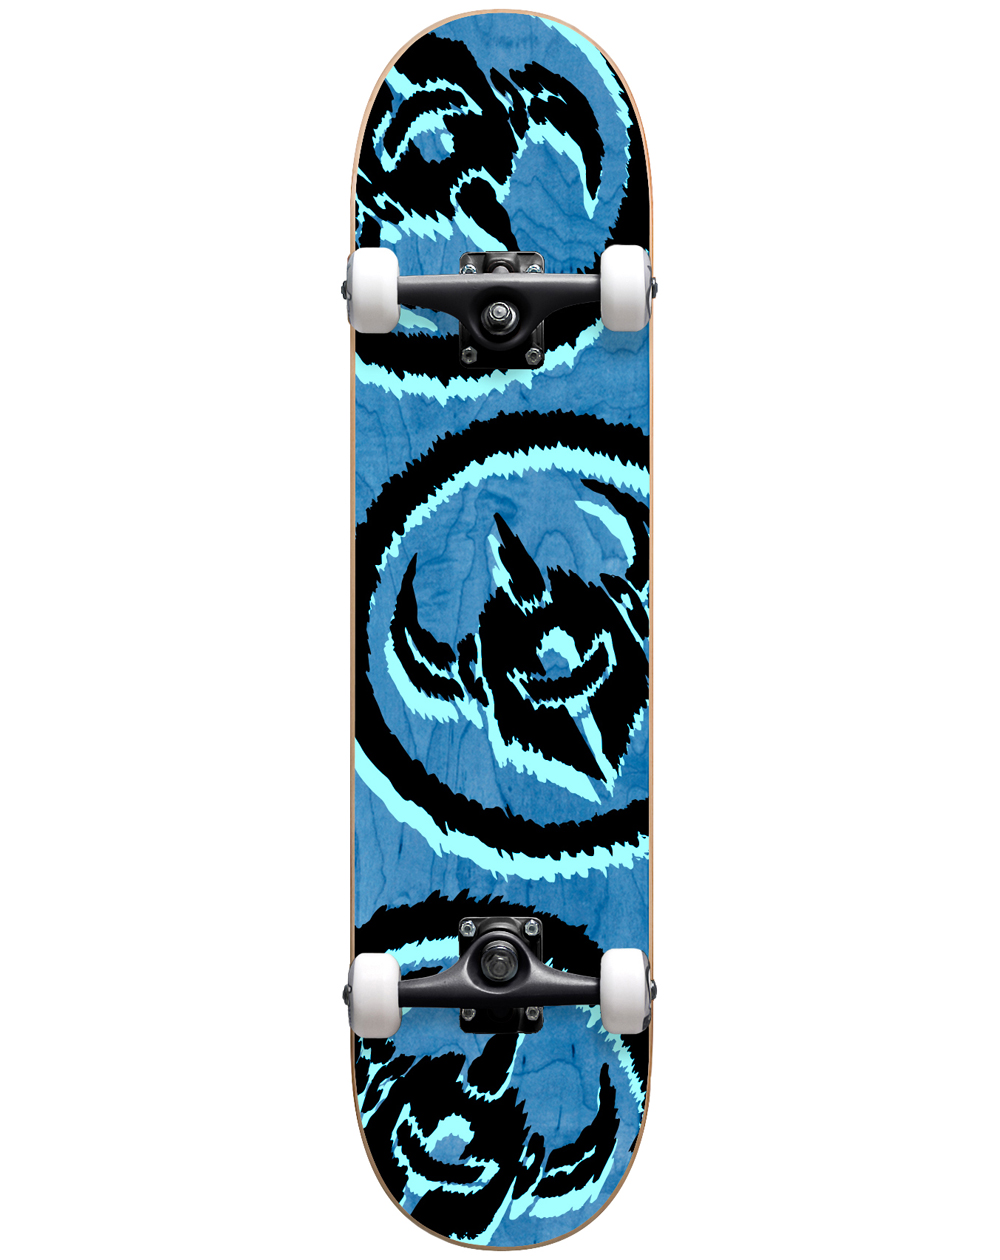 Darkstar Dissent 7.875" Komplett-Skateboard Blue